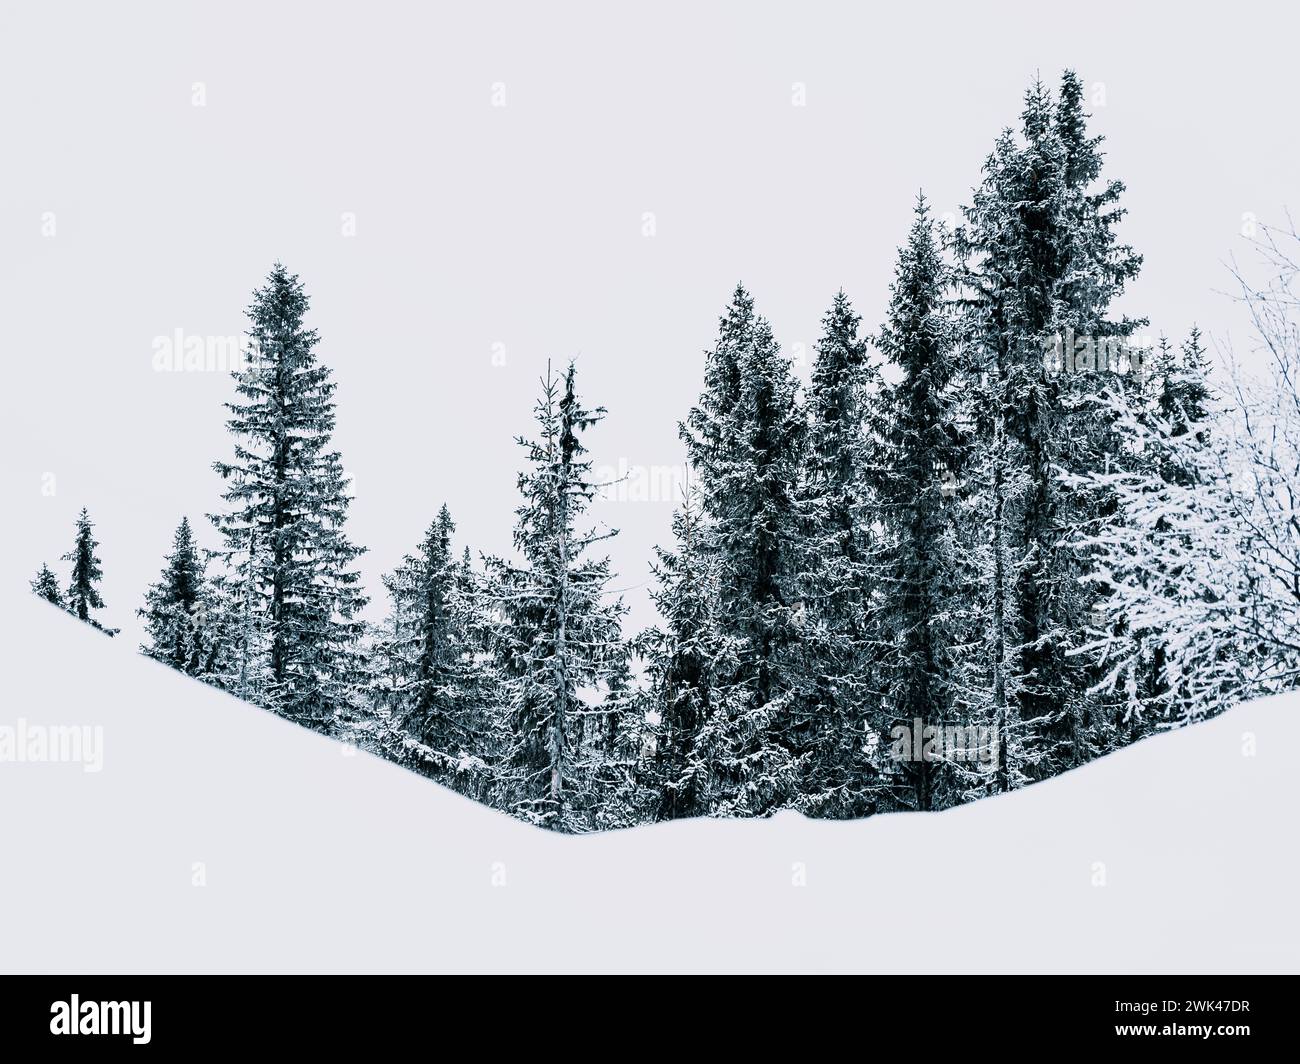 Cette image capture une scène tranquille de grands conifères recouverts de neige fraîche. Le ciel couvert suggère qu'il pourrait être une journée froide en hiver Banque D'Images